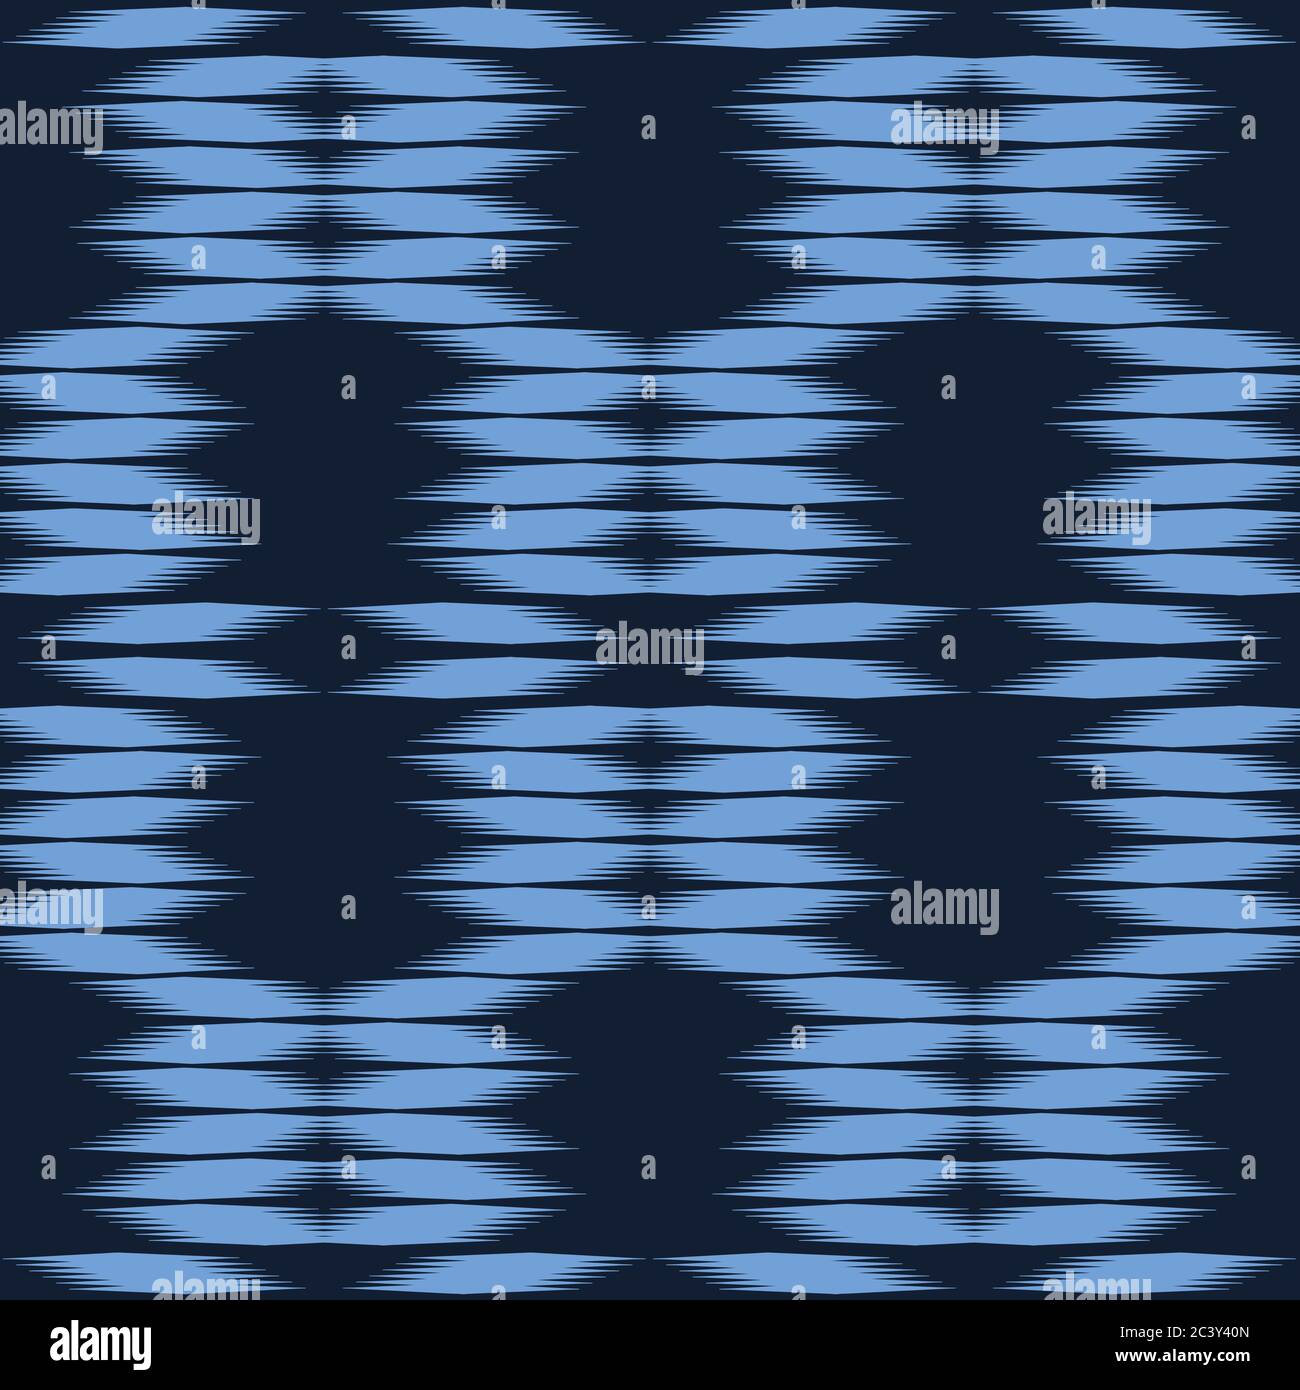 Bleu indigo géométrique noeud à la main motif shibori teint. Répétition de l'arrière-plan de gradient abstrait. Géo monochrome ornementale. Surface tendance Illustration de Vecteur